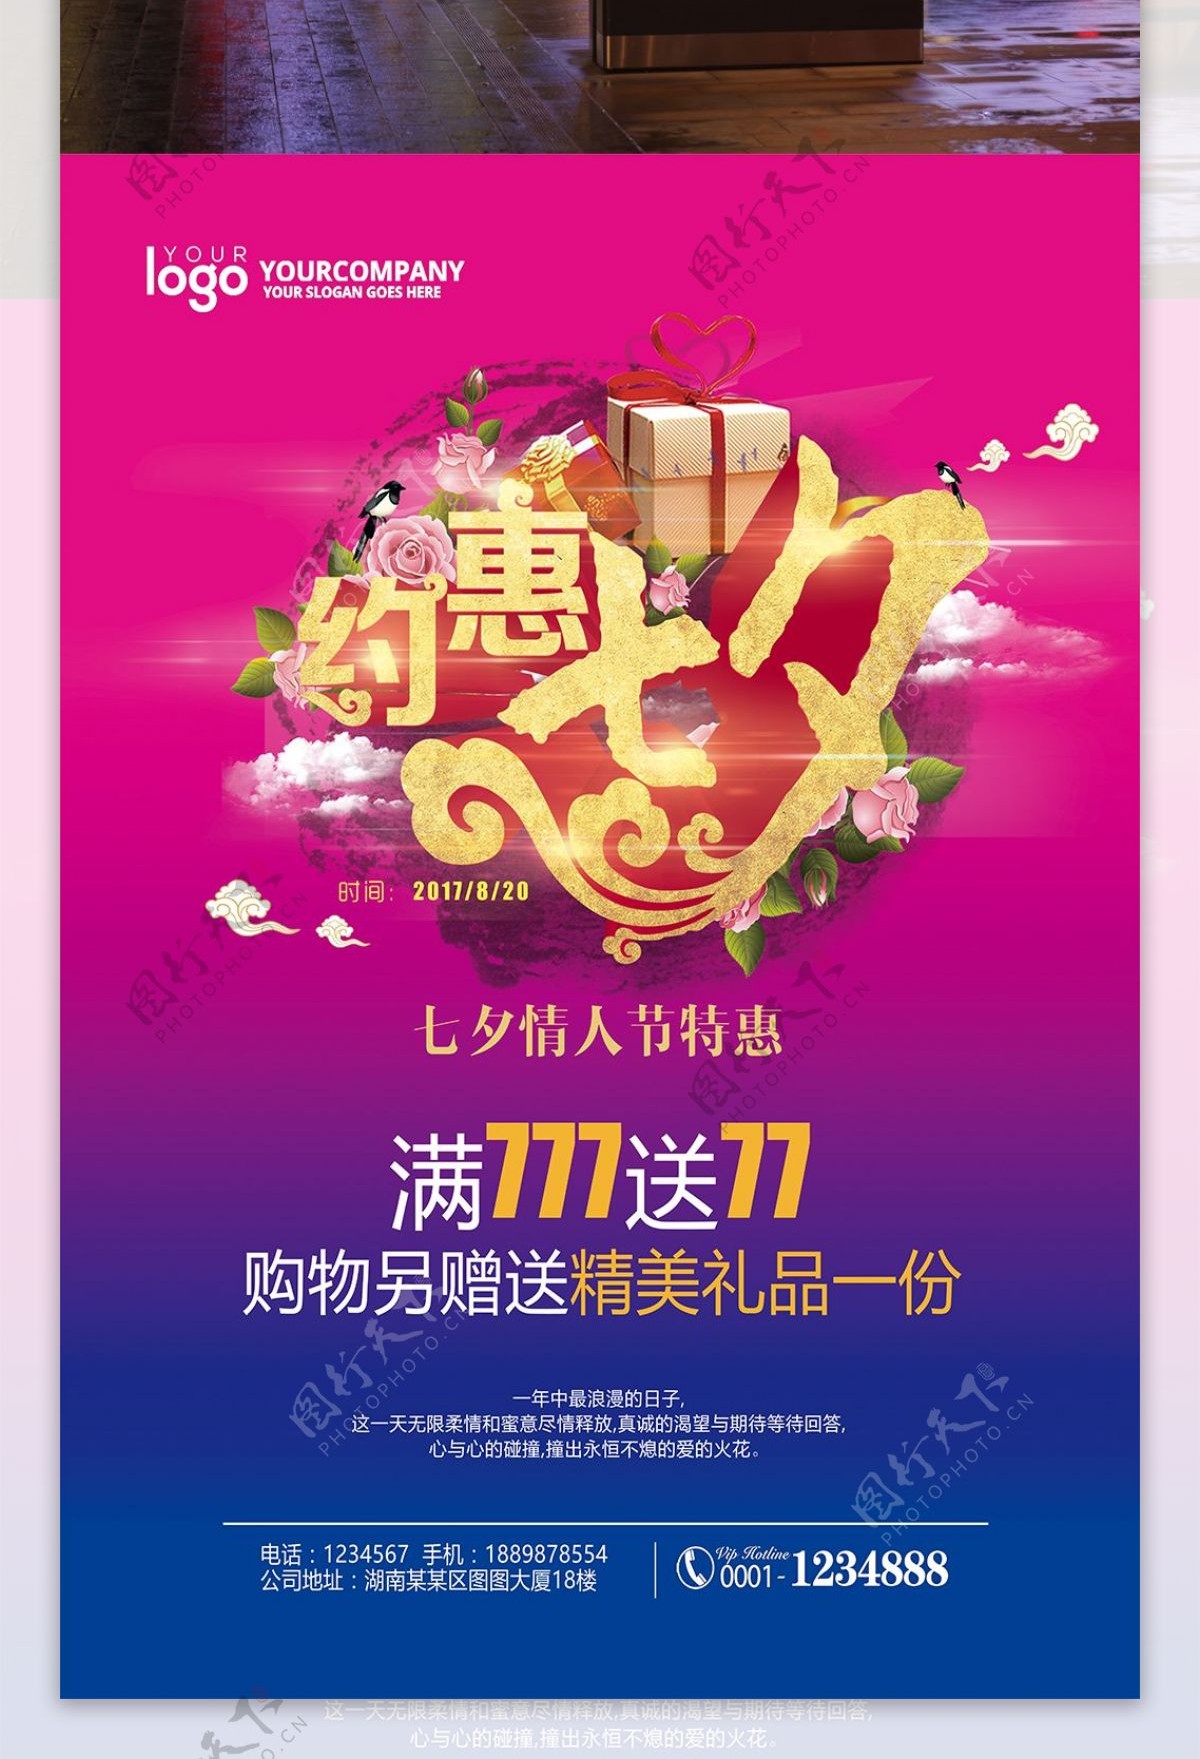 约惠七夕商场活动促销宣传海报设计